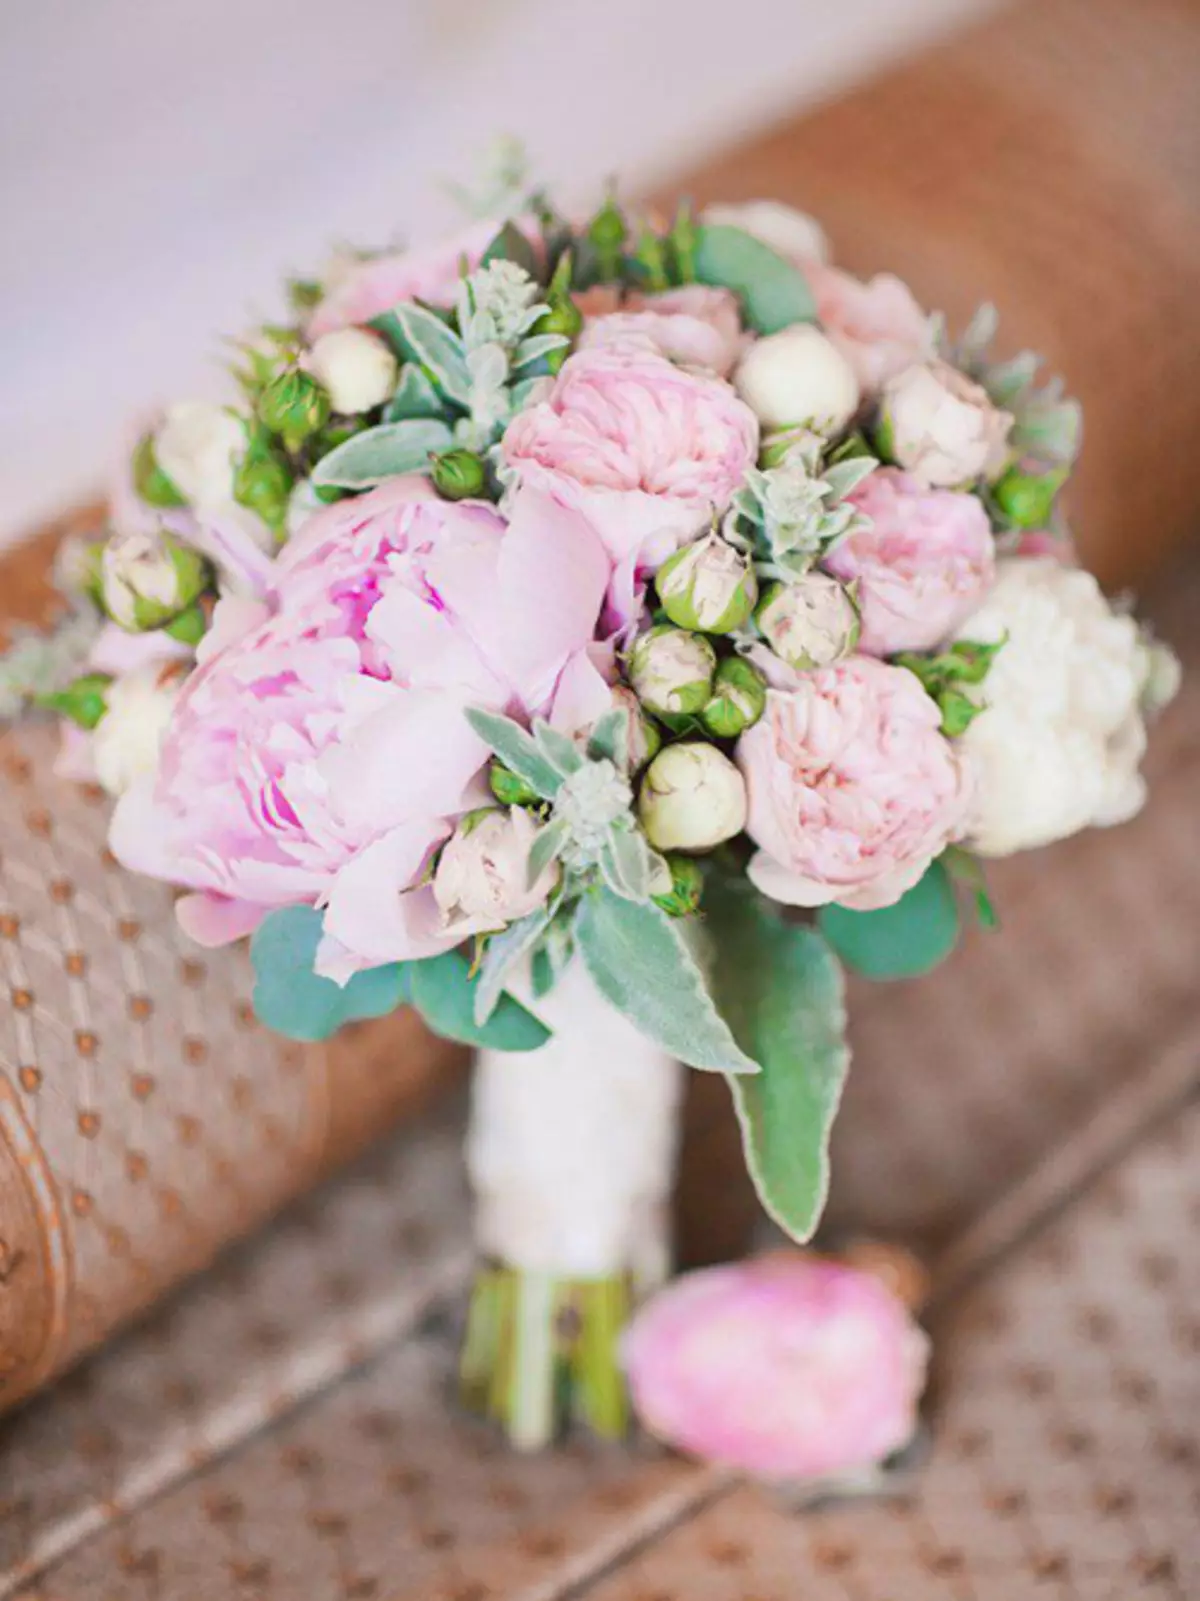 Vestuvių peonijų puokštė (108 nuotraukos): deriniai su baltais vandeniu ir raudonaisiais telefonu, bordo, alyvinės ir violetinės gėlės deriniai vestuvių puokštėje 8013_84